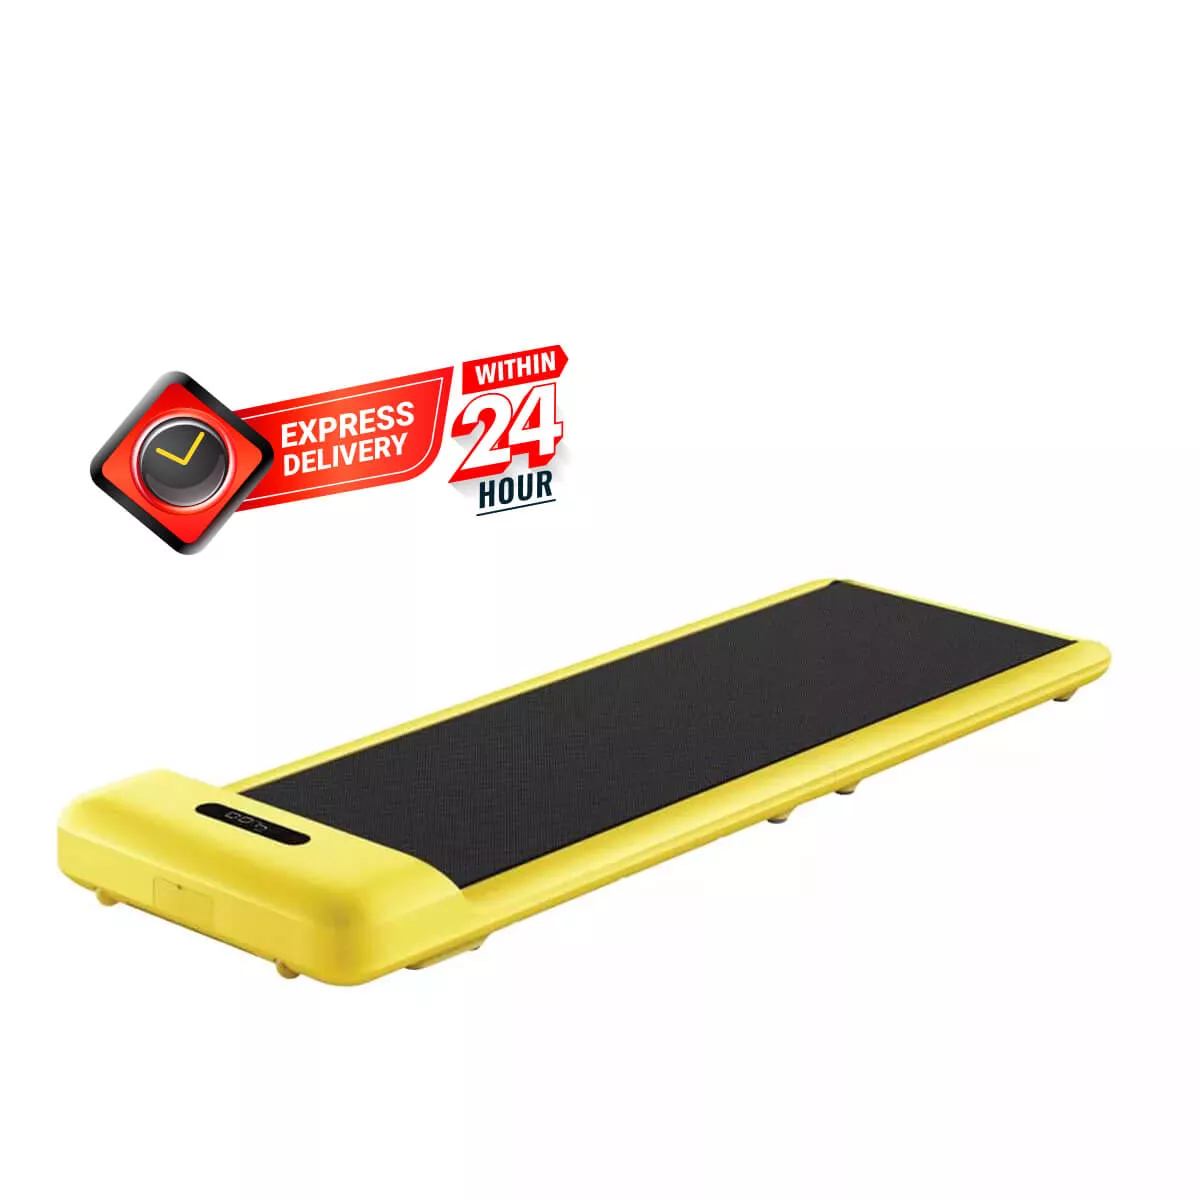 WalkingPad X21 Double Fold Treadmill With Speed Dial Black TRX21F